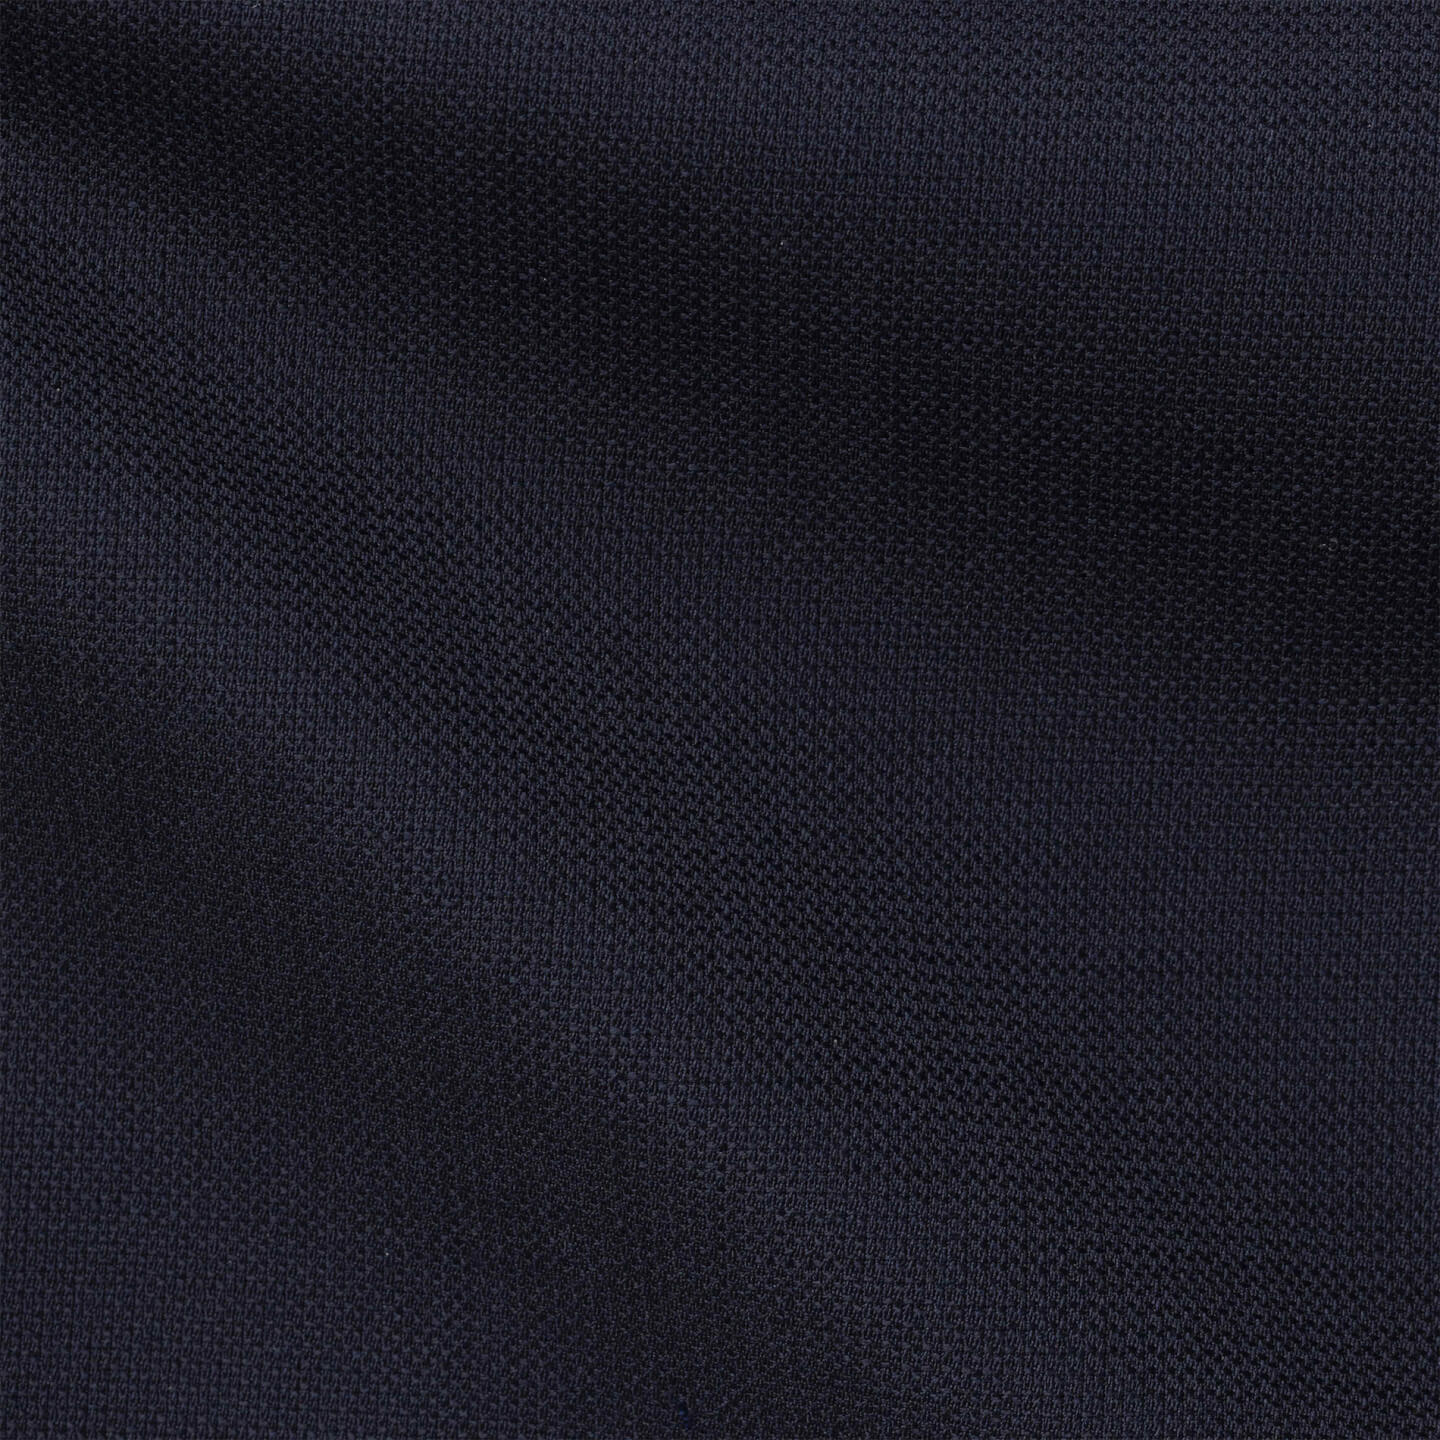 Jacket traveller hopsack dark blue image 4